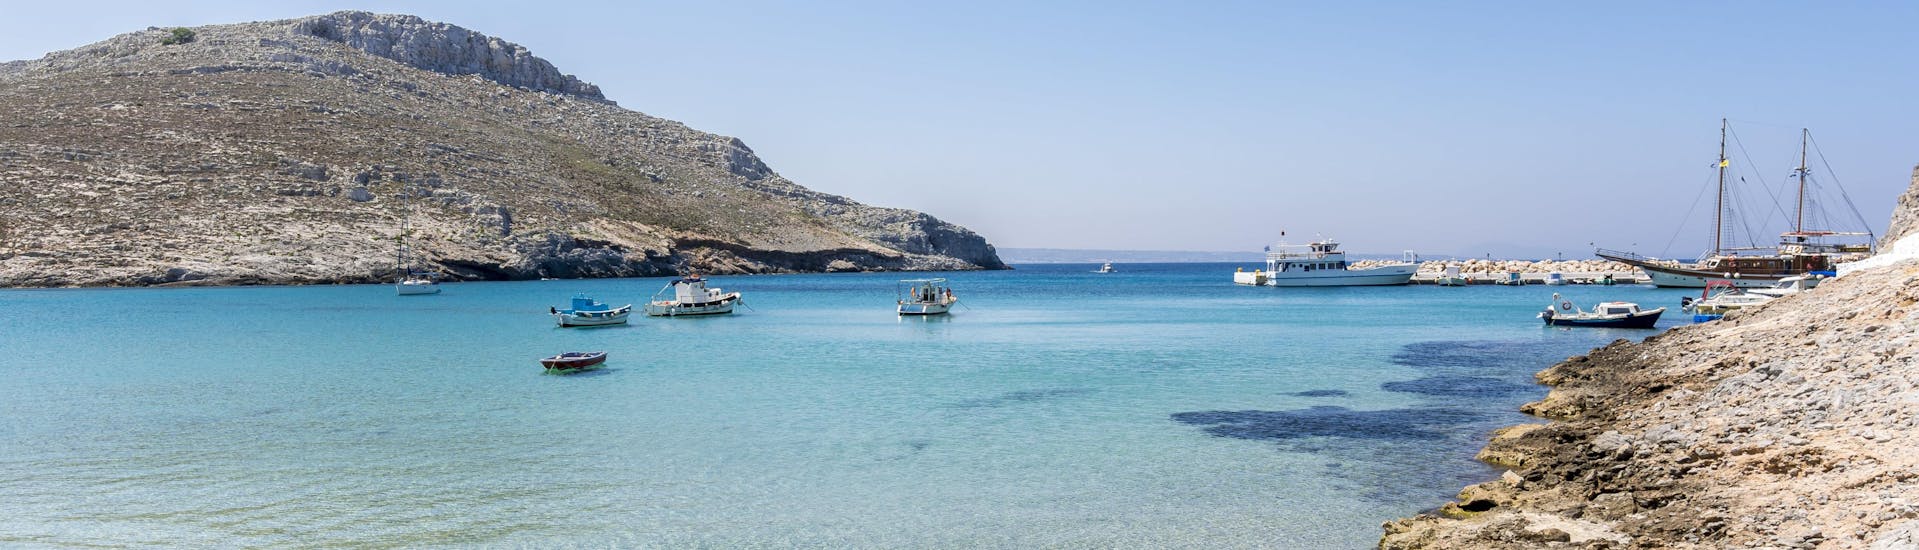 Blick auf eine Bucht auf der Insel Pserimos, die über eine Bootstour im Dodekanes erreichbar ist.